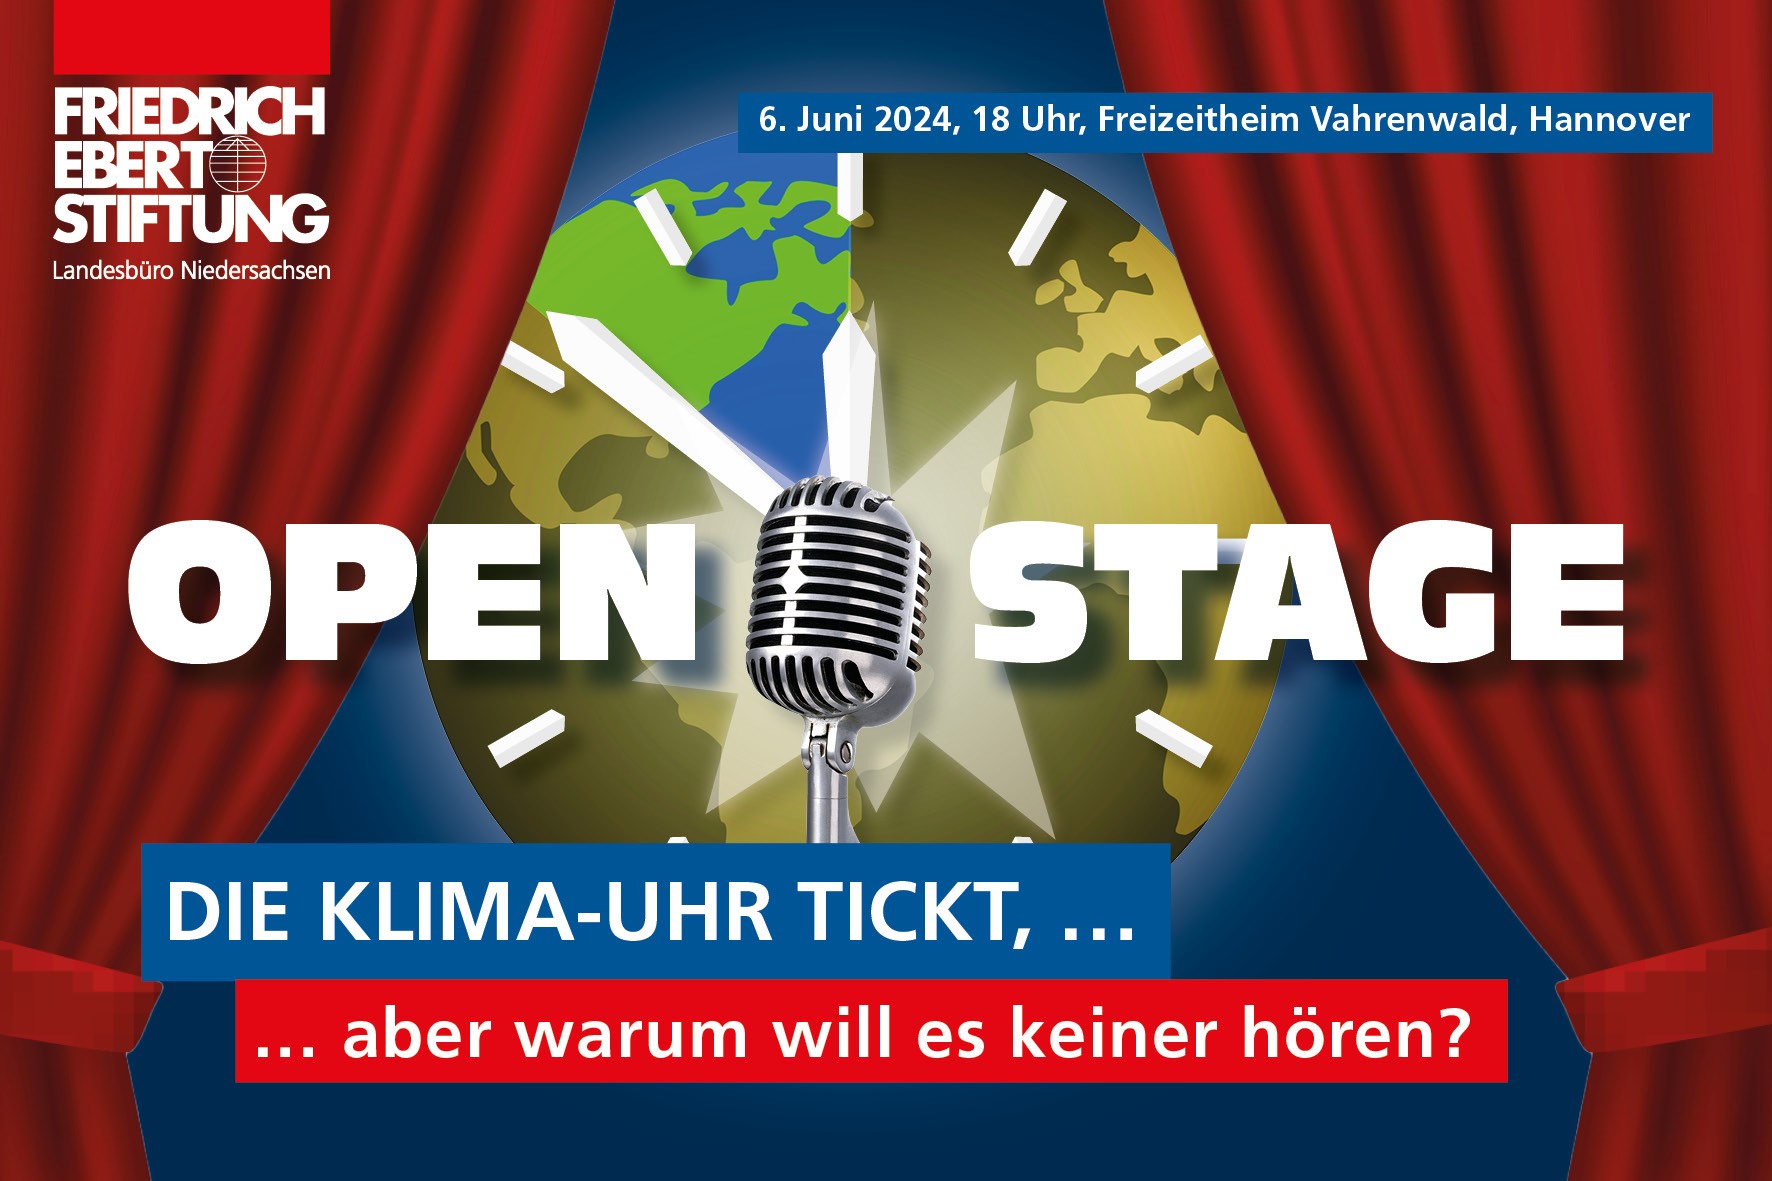 Open Stage - Die Klima-Uhr tickt, aber warum will es keiner hören?